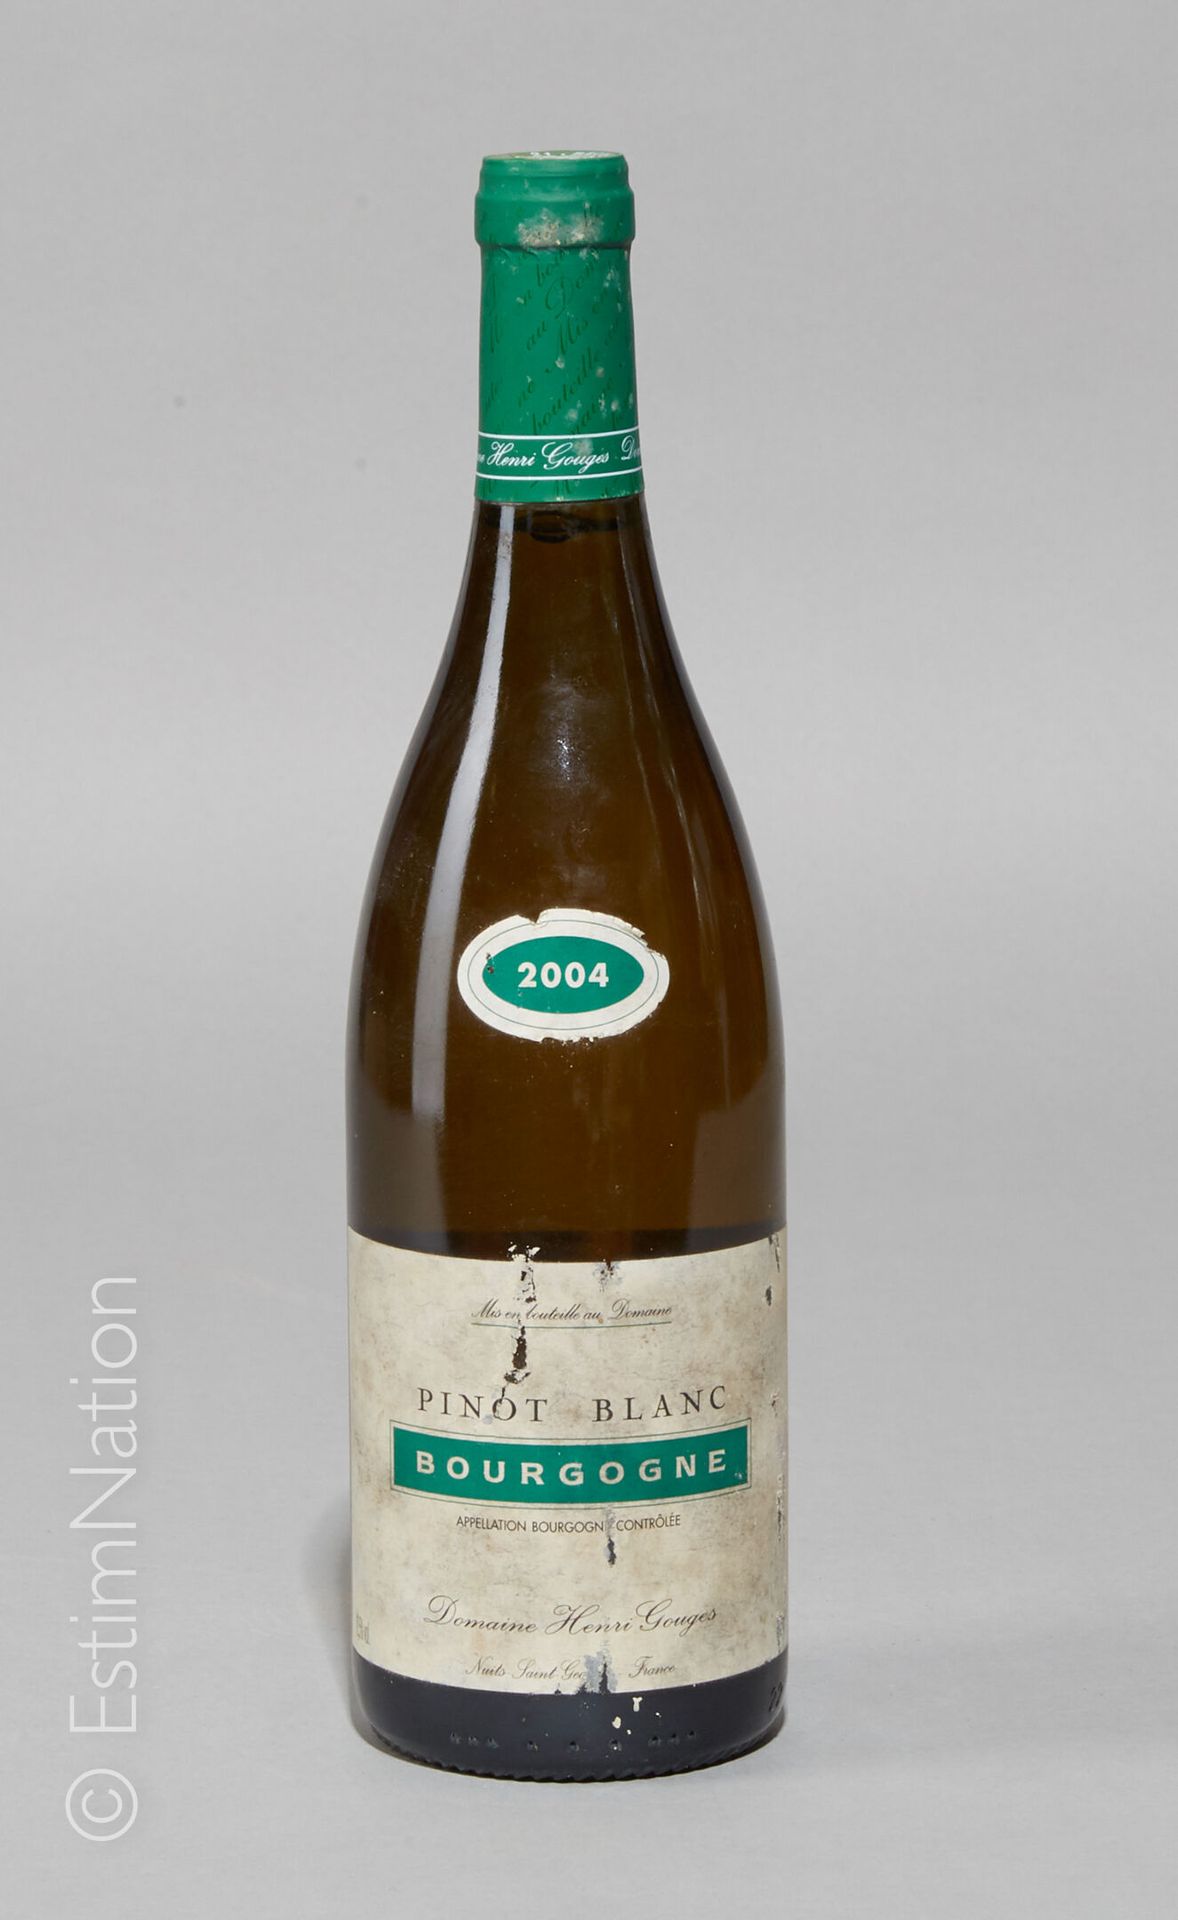 BOURGOGNE 1 bottle Bourgogne 2004 (Pinot Blanc) Domaine Henri Gouges